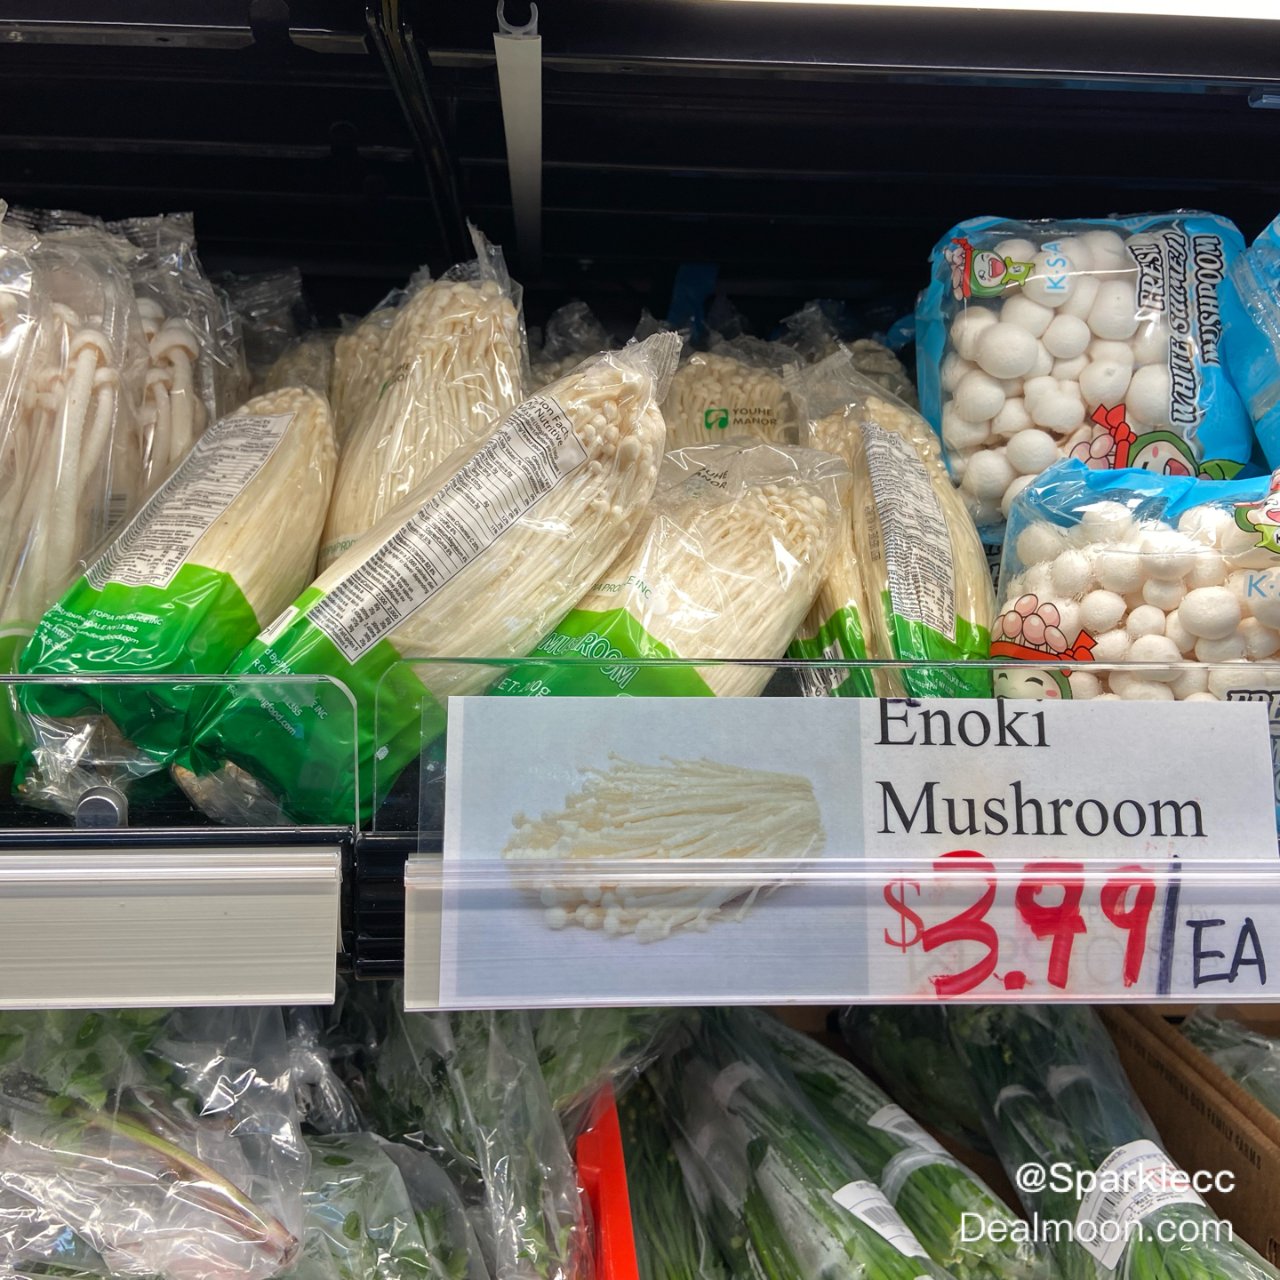 菌菇类产品真涨价了丨涨成了一副吃不起的样...